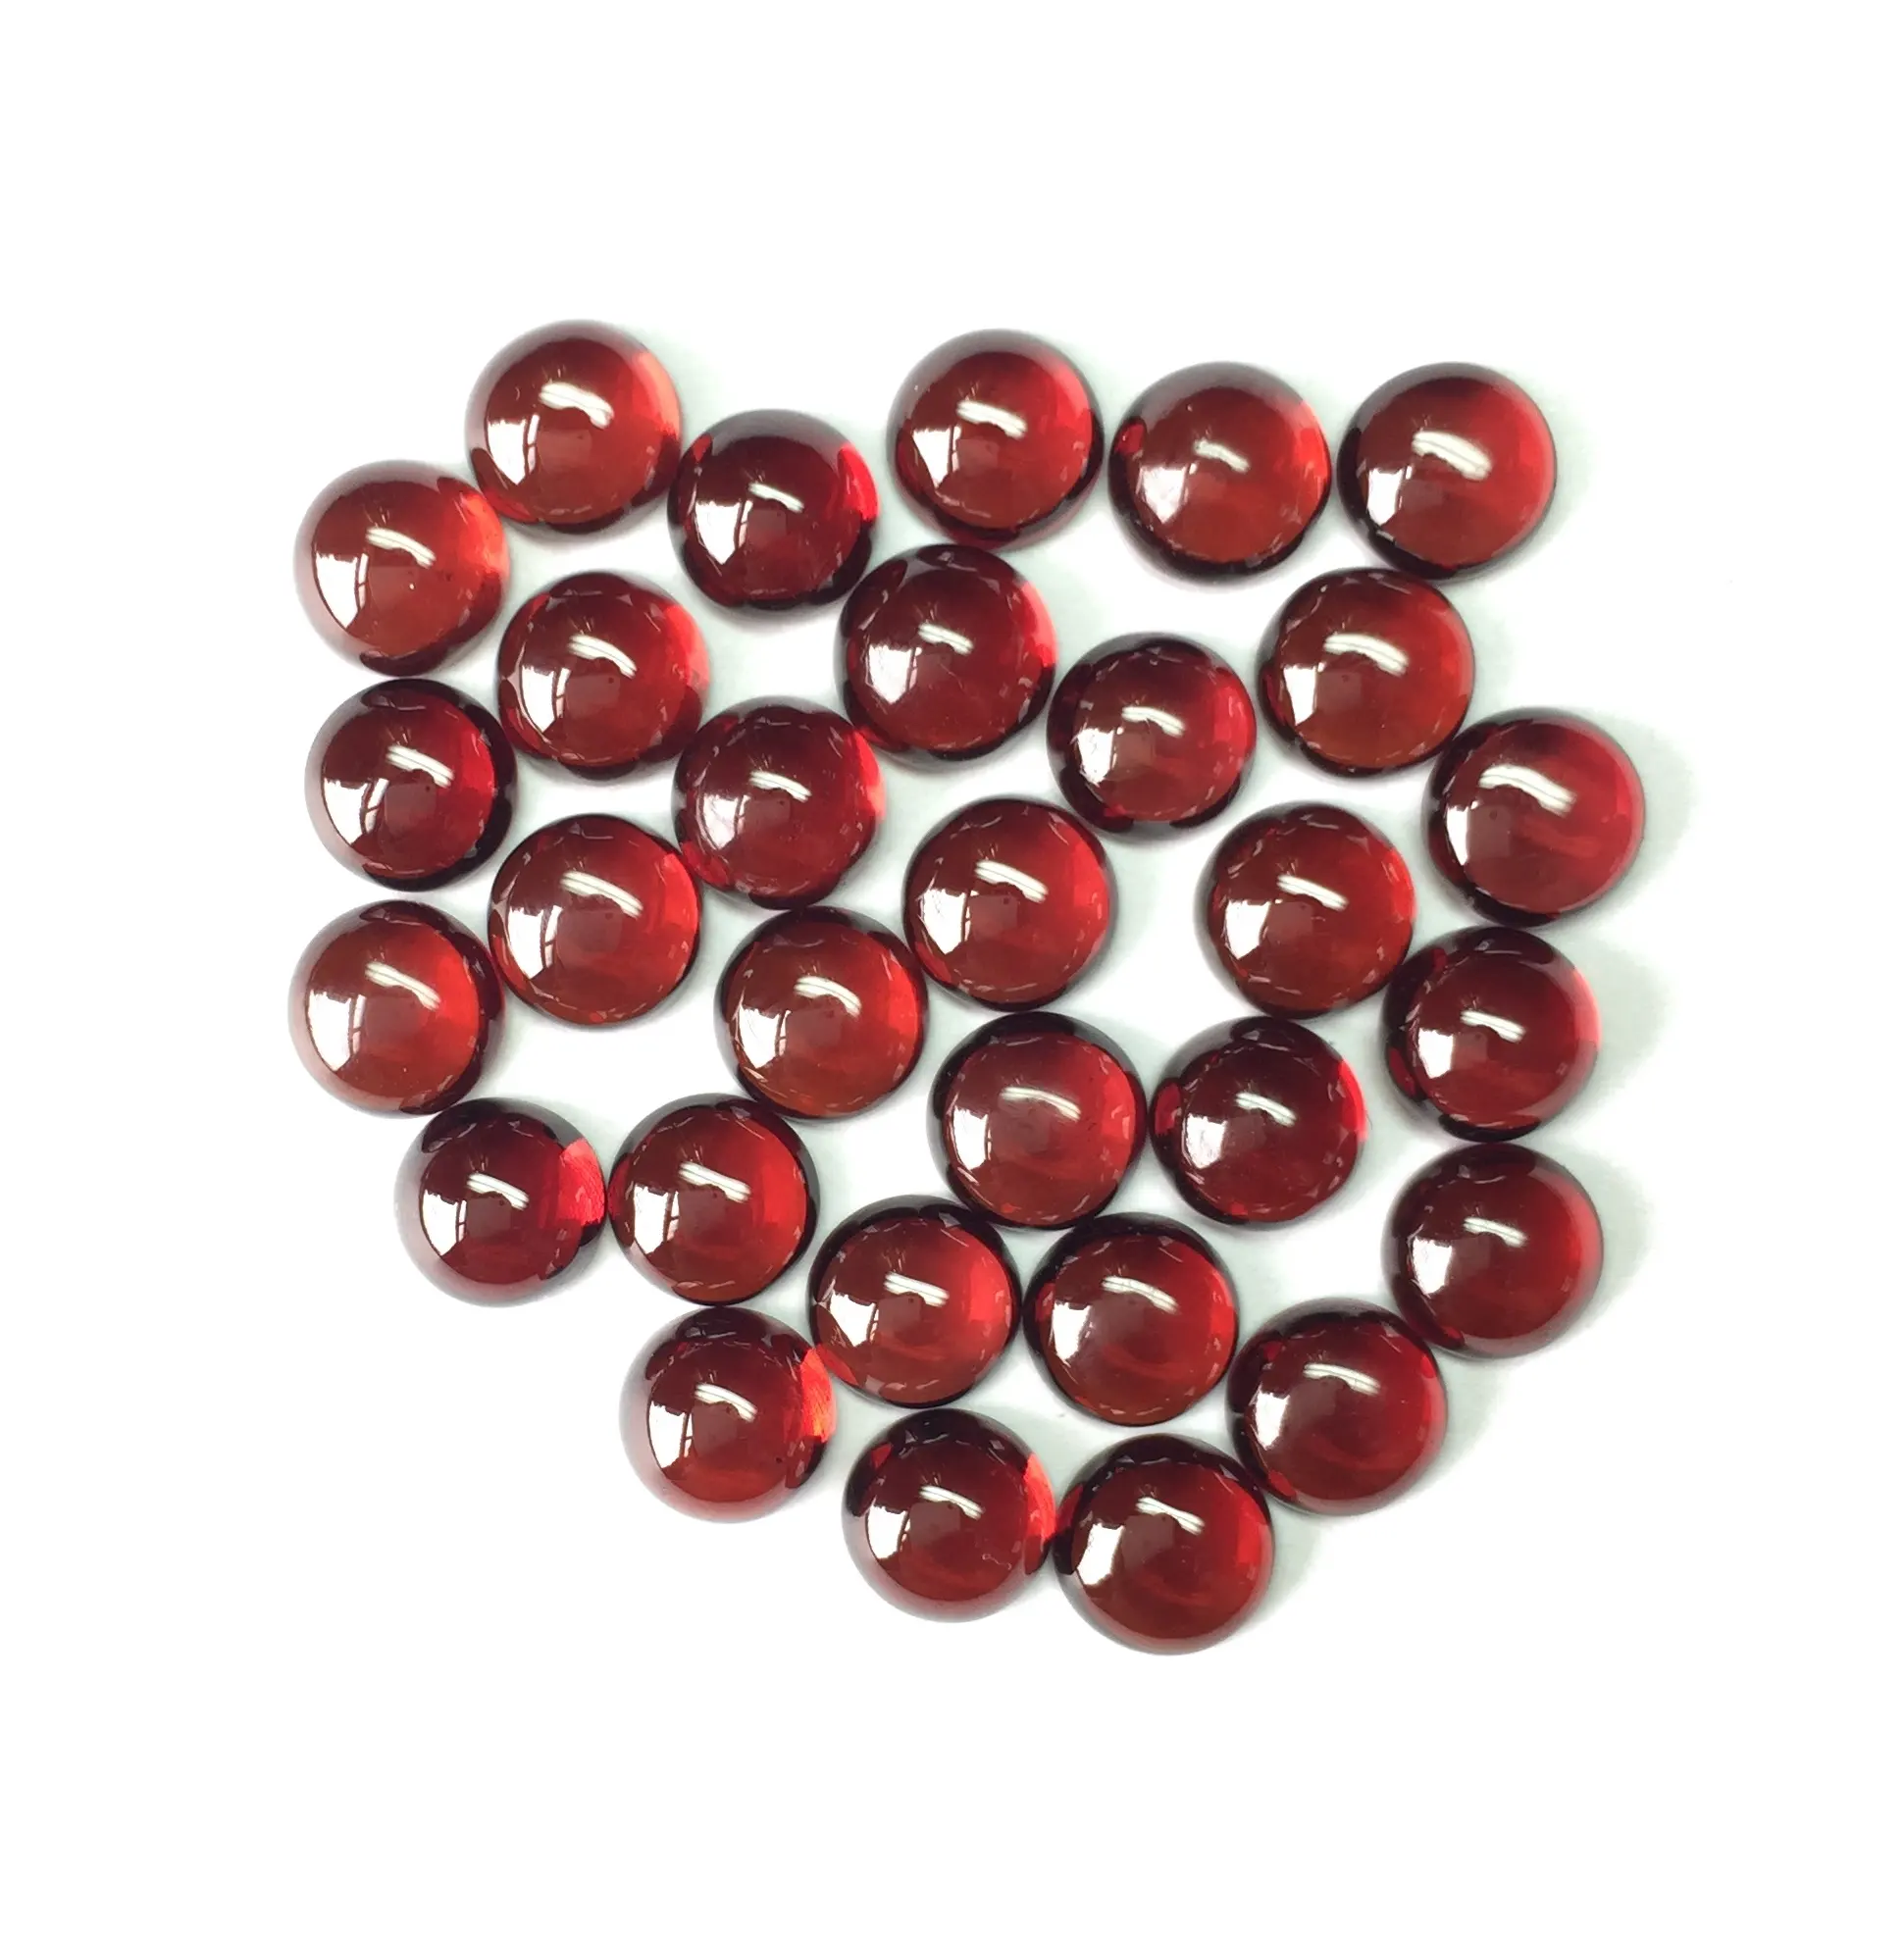 5mm प्राकृतिक लाल गार्नेट ढीला दौर Cabochon रत्न थोक मूल्य प्राकृतिक अच्छी गुणवत्ता पत्थर थोक थोक 100% अच्छा रंग